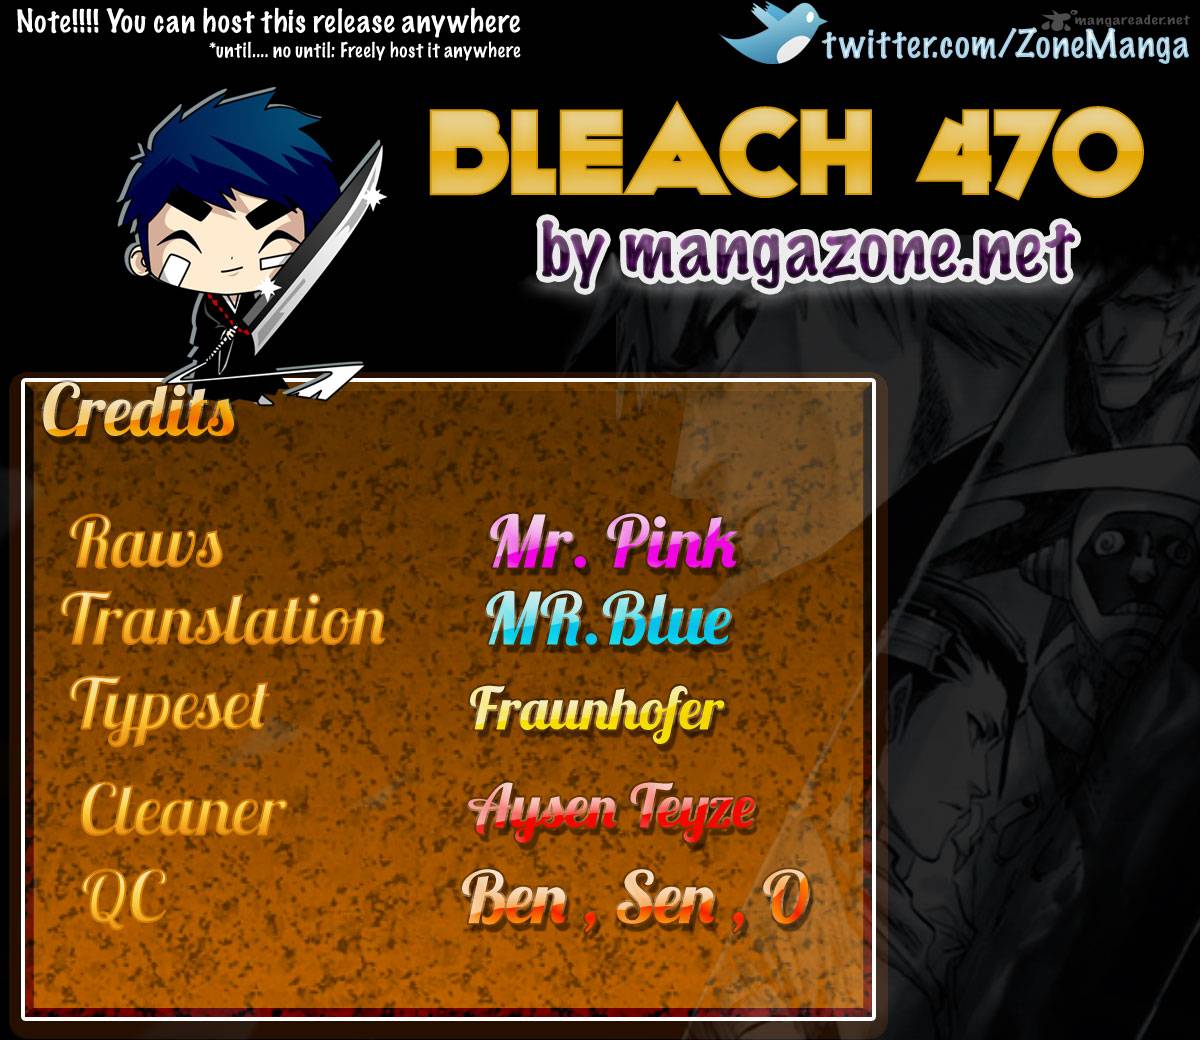 Bleach 470 20